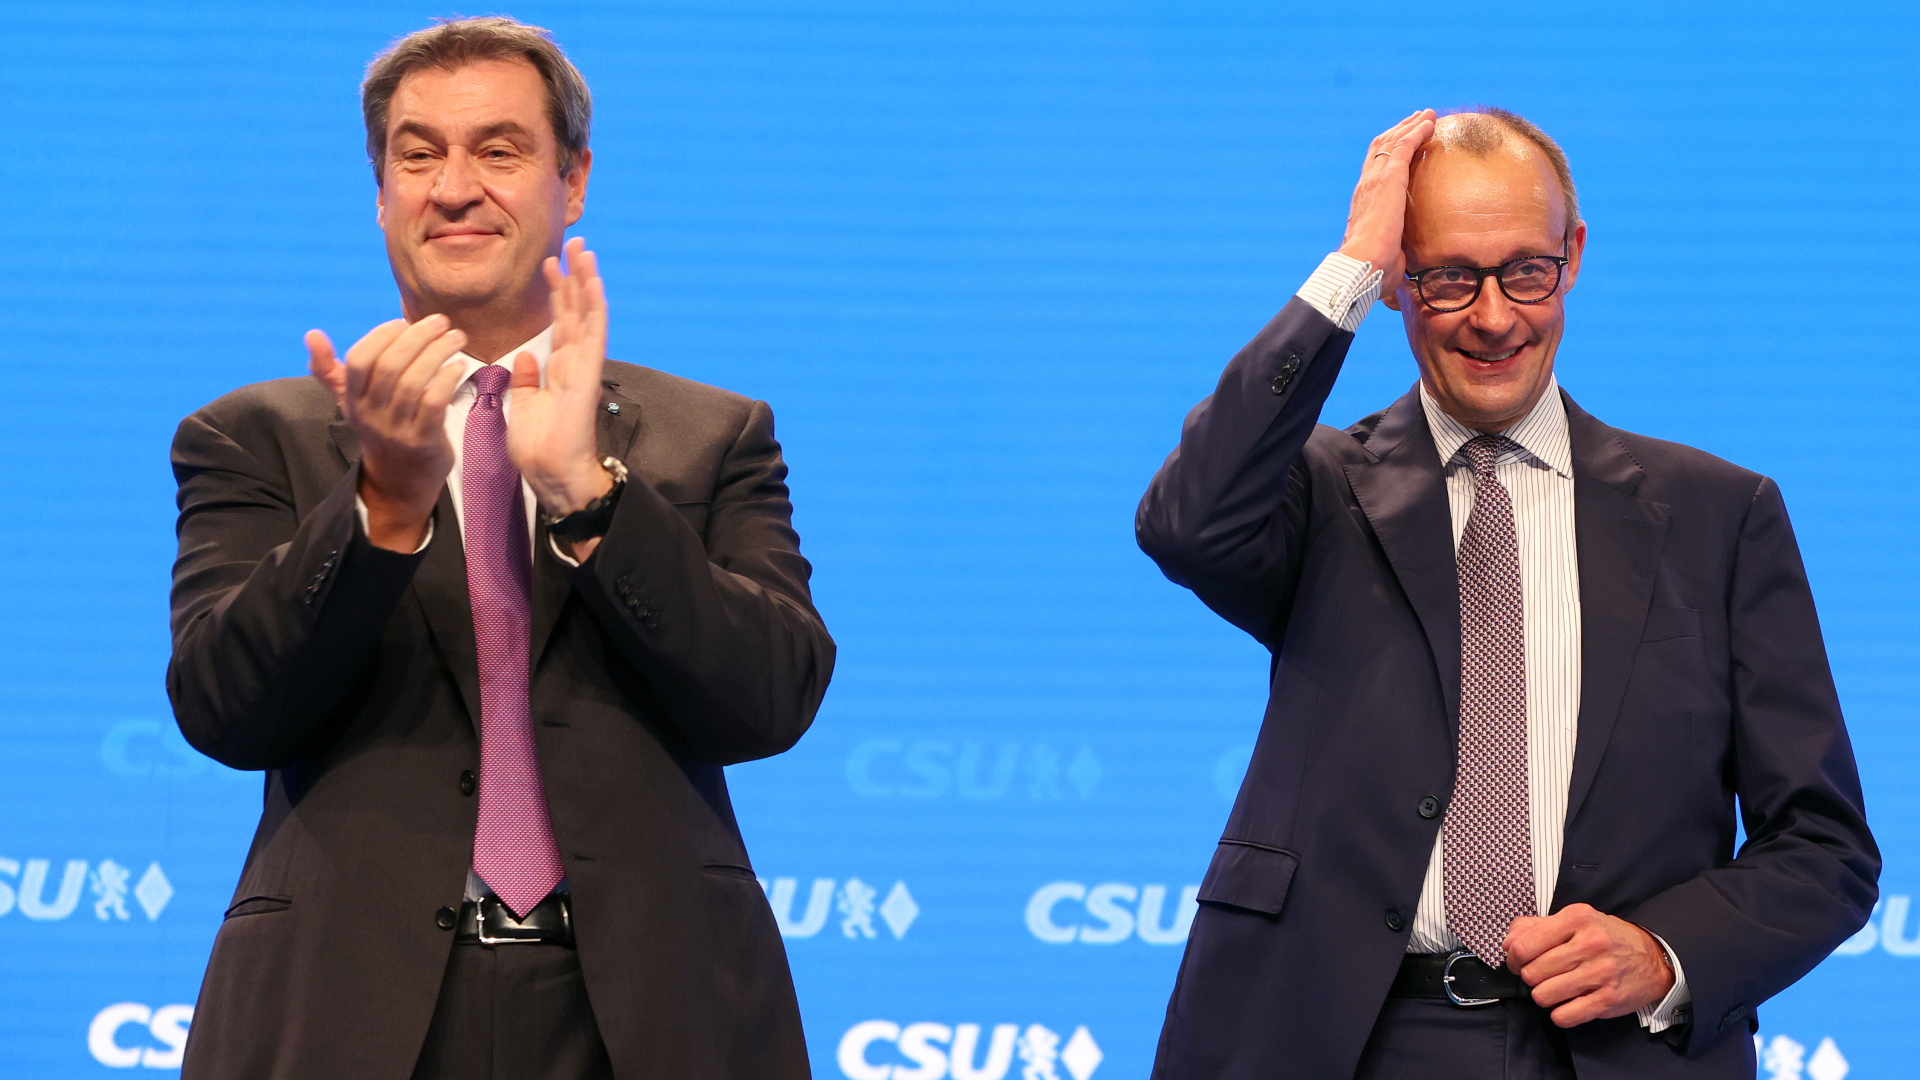 Markus Söder, CSU-Vorsitzender und bayerischer Ministerpräsident (l), steht mit Friedrich Merz, Vorsitzender der CDU, nach dessen Rede auf der Bühne des CSU-Parteitags | dpa